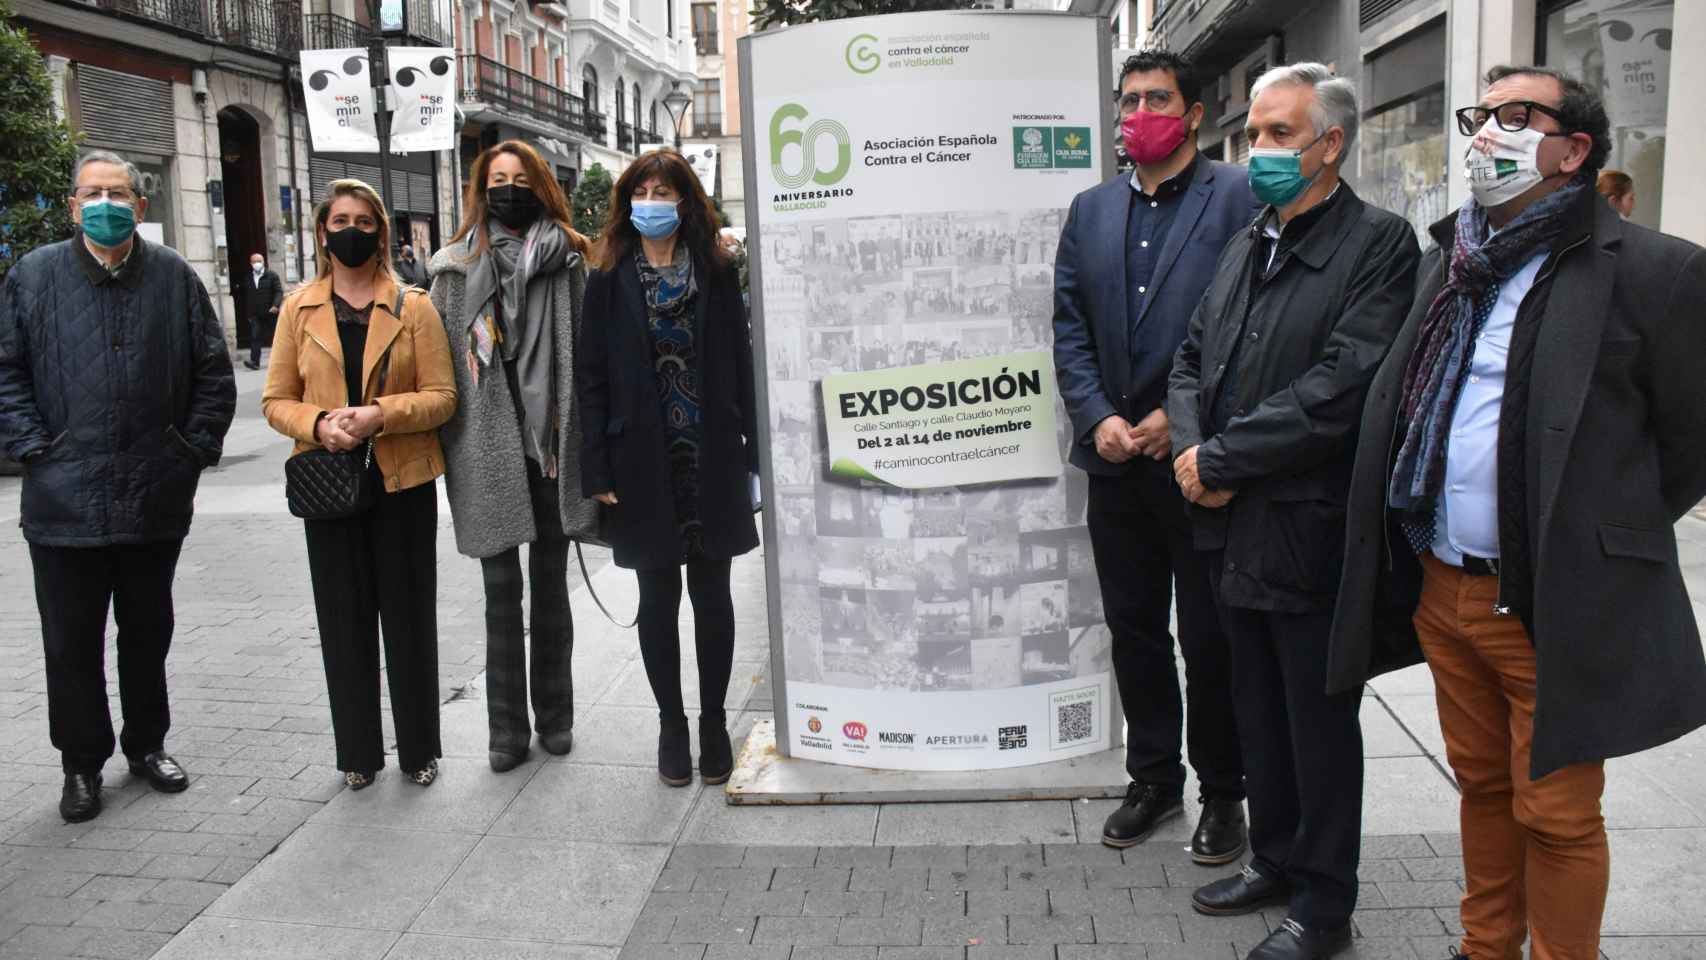 La exposición consta de 40 carteles repartidos en la calle Santiago